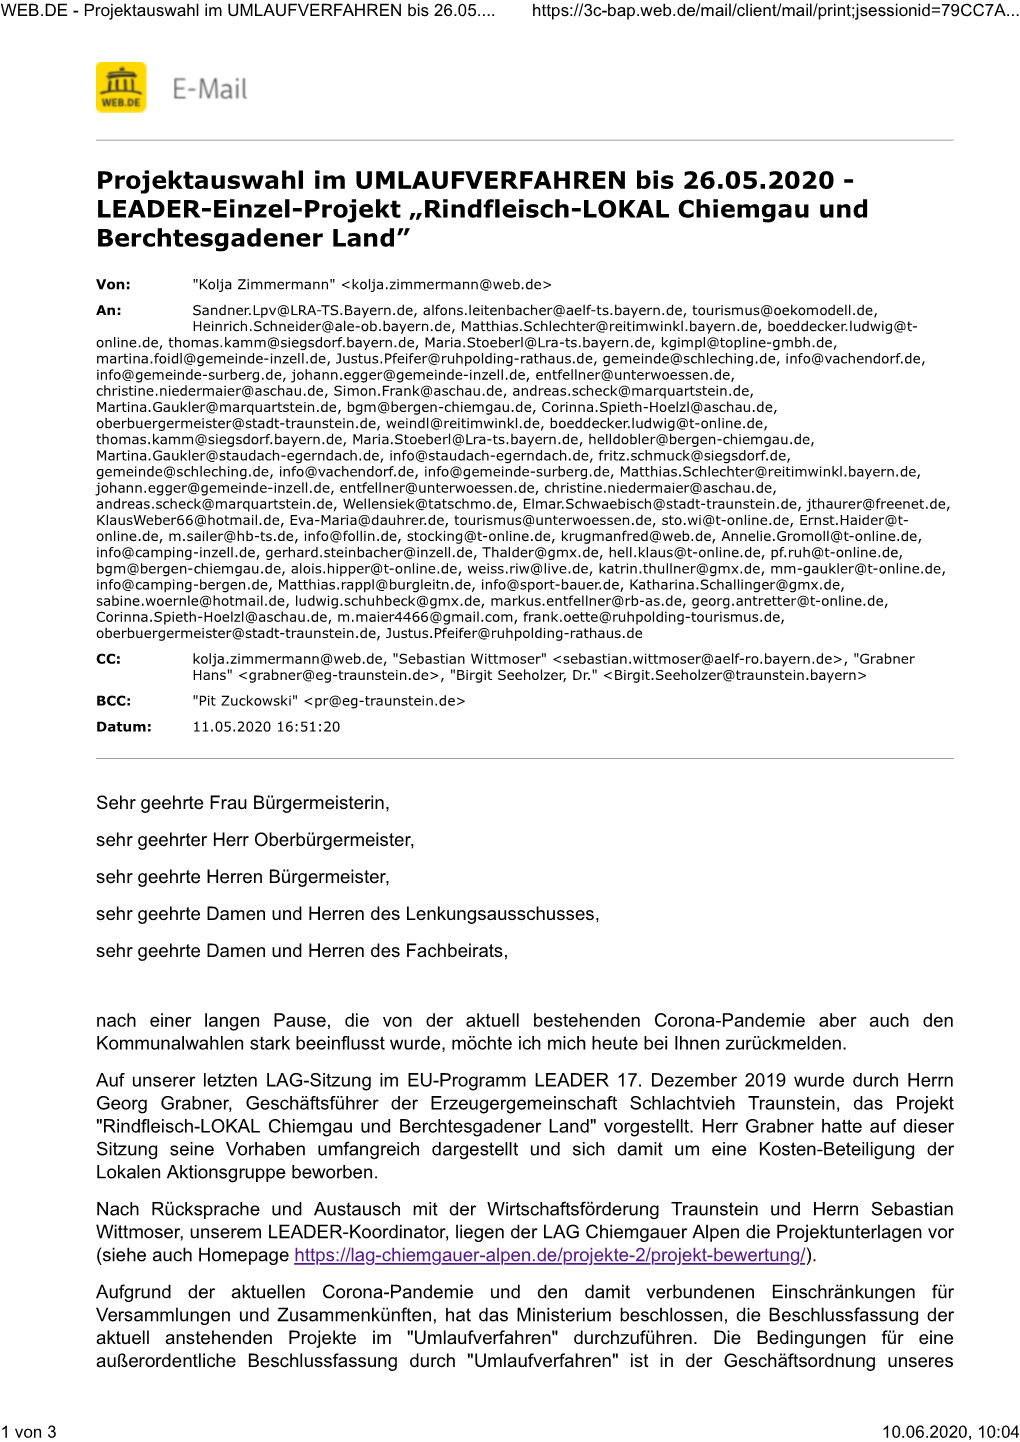 Projektauswahl Im UMLAUFVERFAHREN Bis 26.05.2020 - LEADER-Einzel-Projekt „Rindfleisch-LOKAL Chiemgau Und Berchtesgadener Land”